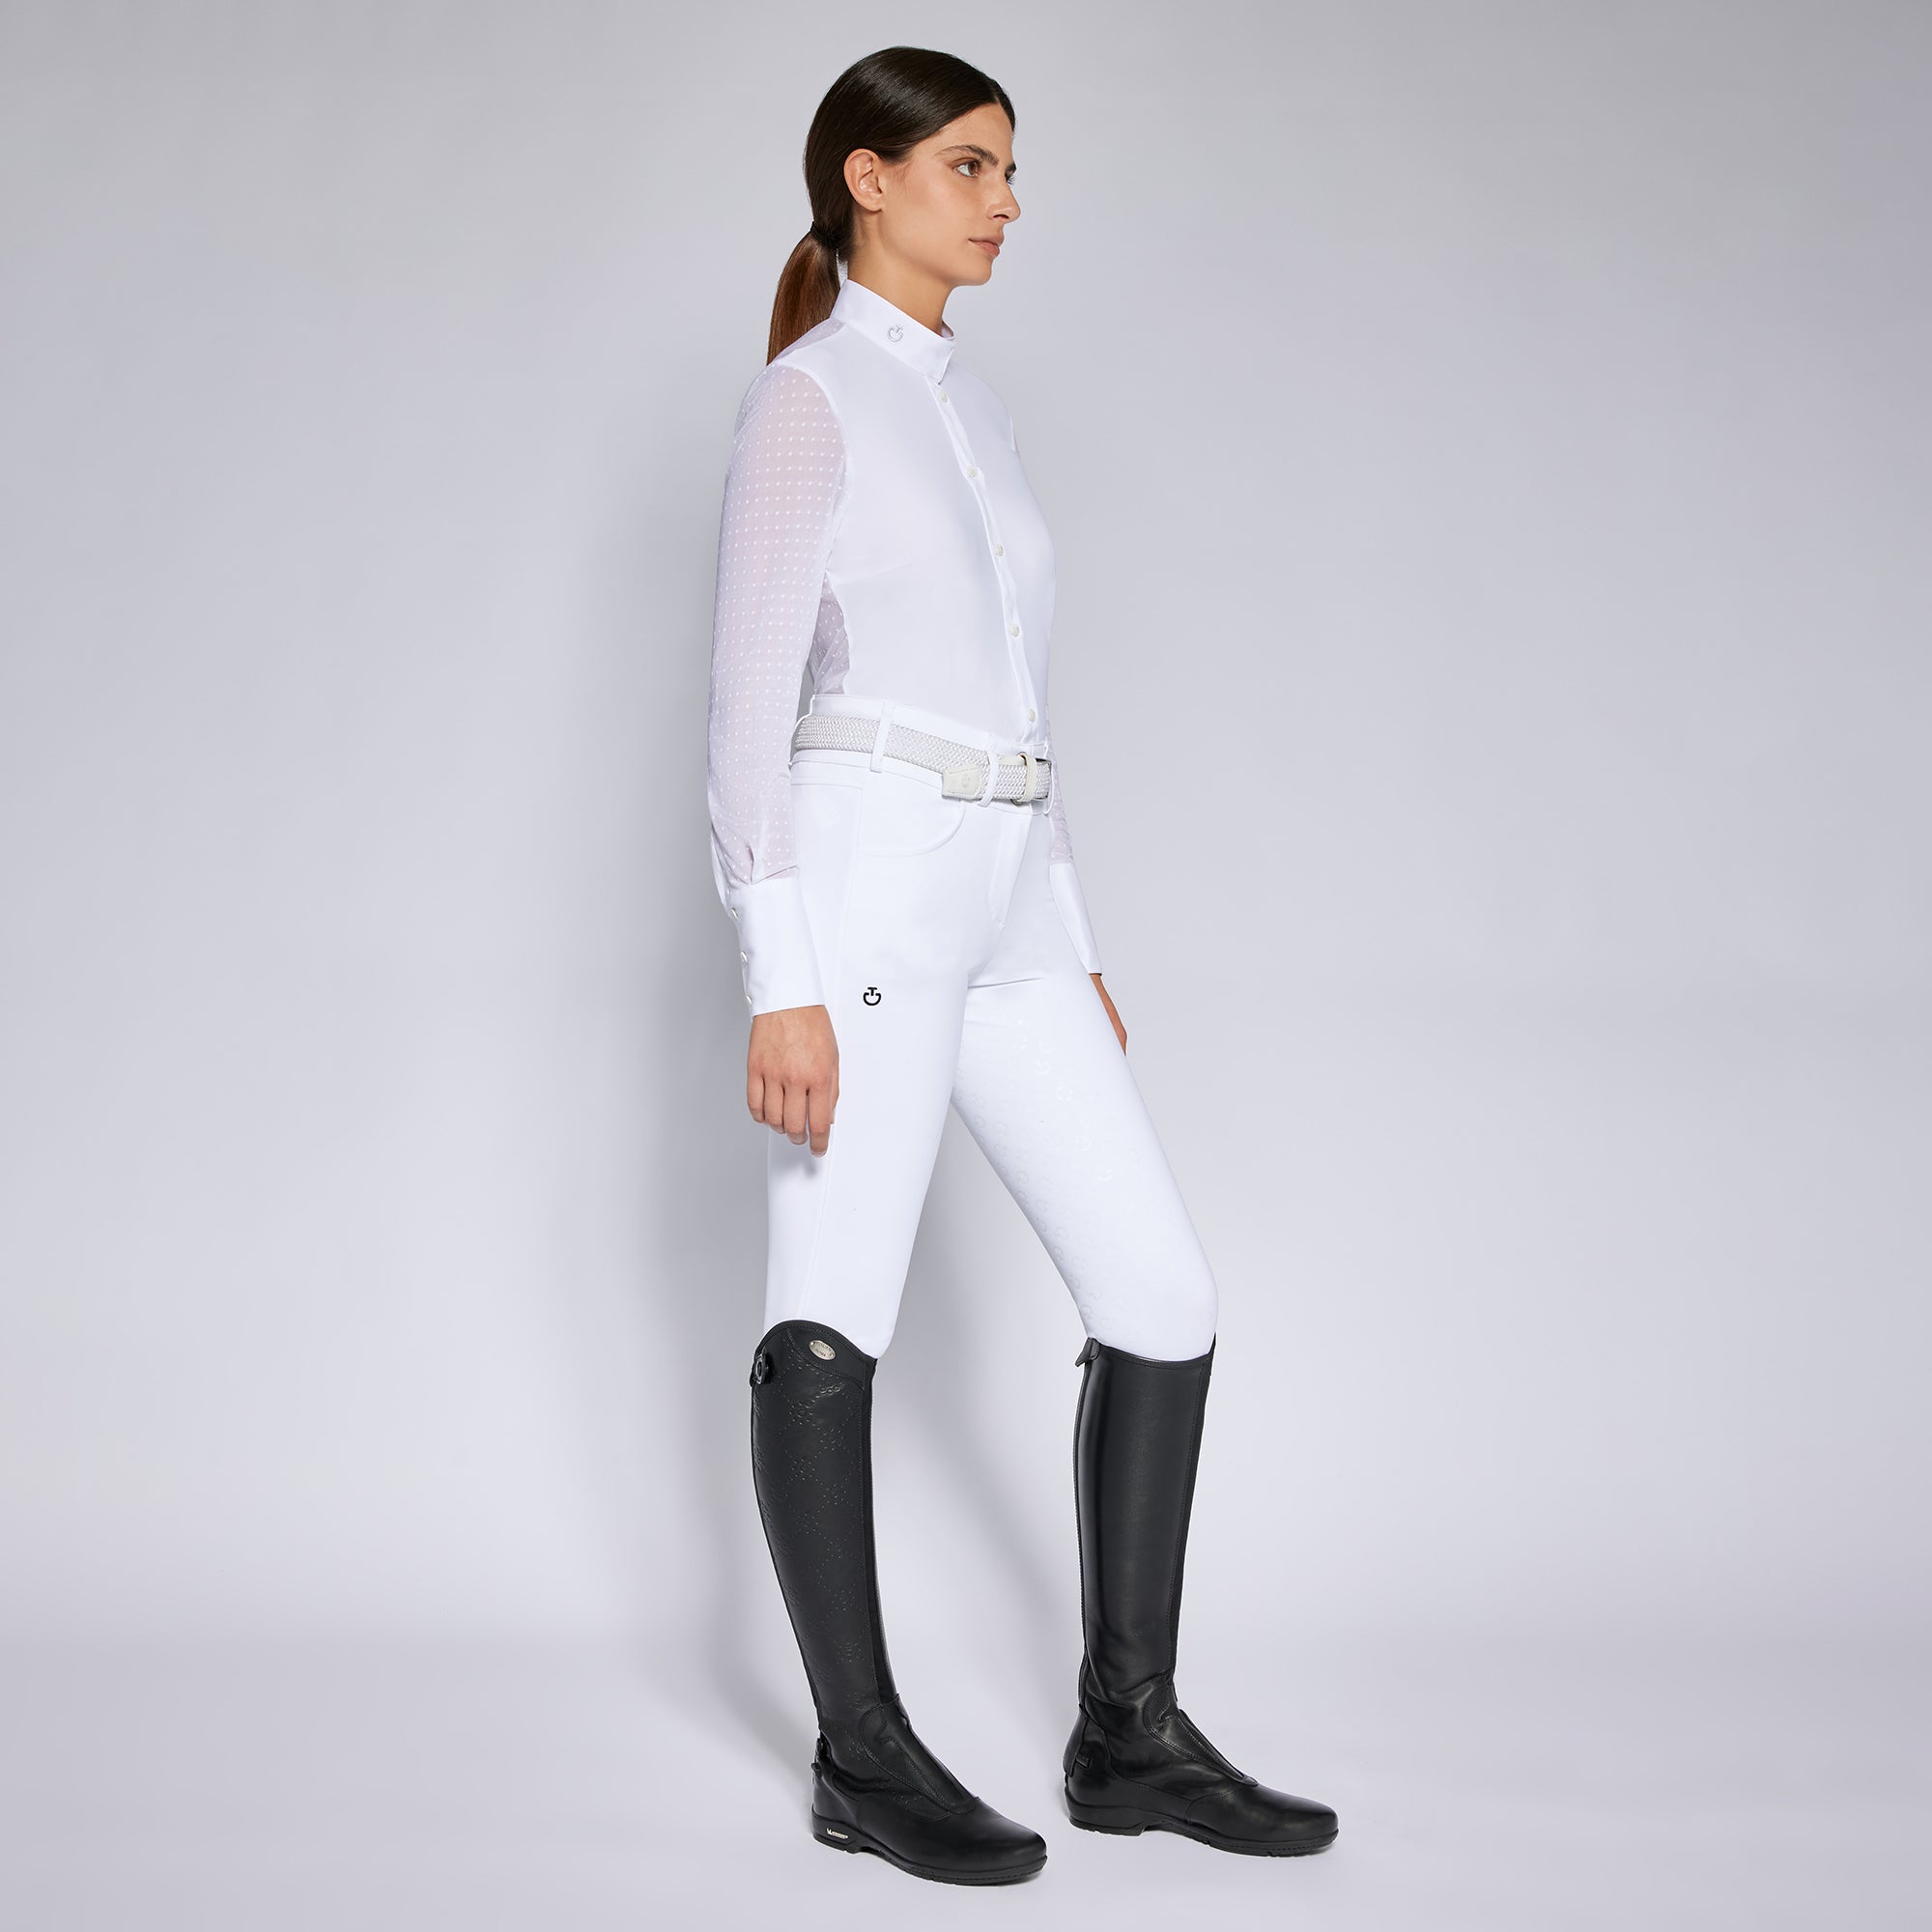 Entdecken Sie das Cavalleria Toscana Damen Turniershirt - Eleganz trifft auf Funktion. Weiß, mit Polka-Dots und Komfort für Ihre Bestleistung! Jetzt kaufen!